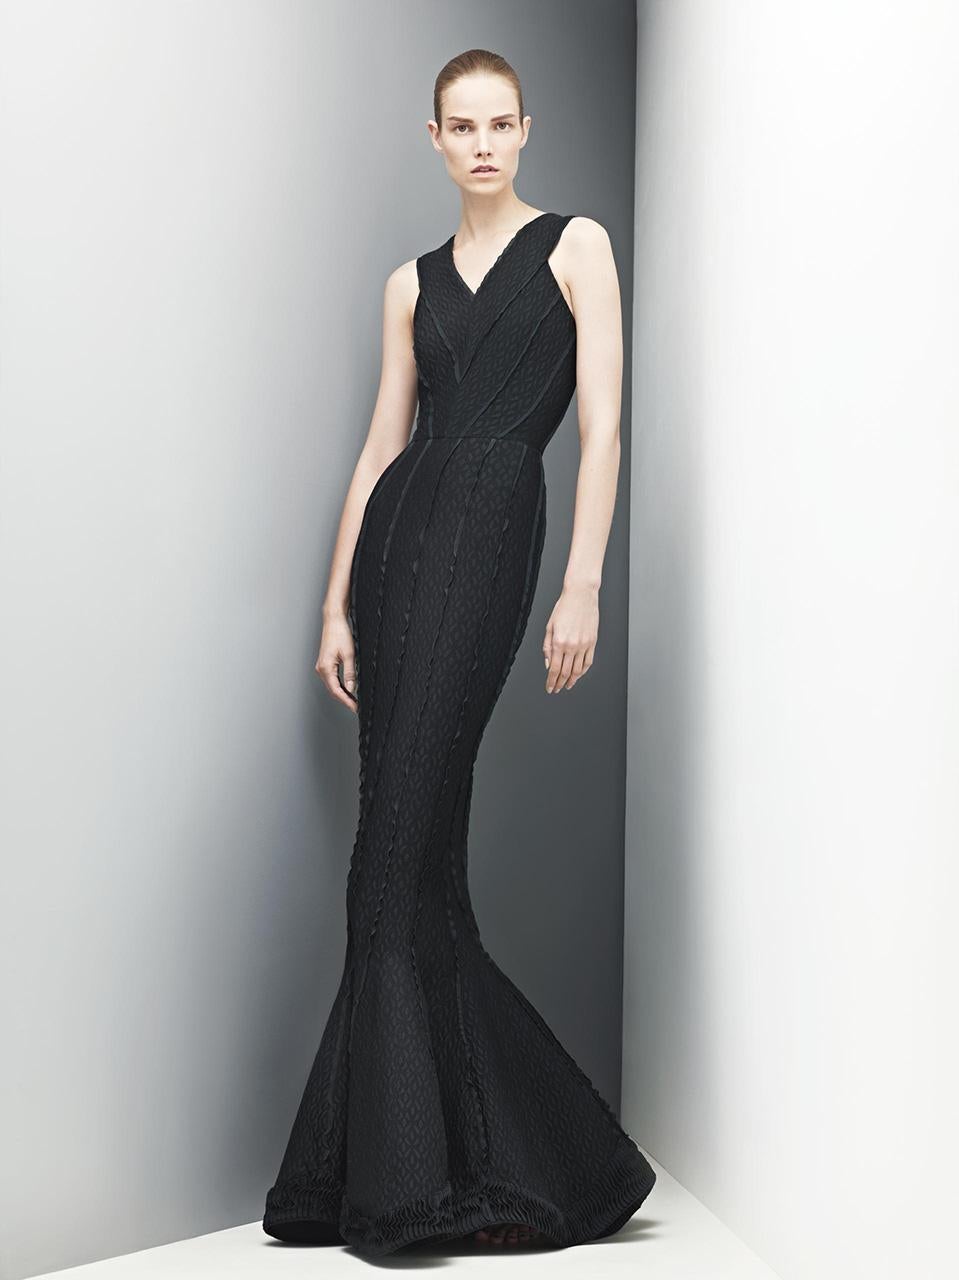 Une robe longue en maille extensible ultra séduisante et immédiatement reconnaissable d'Azzedine Alaia, à motifs noirs découpés et accentués de métal, datant de sa collection automne-hiver 2012. Alaïa a fait découvrir le 